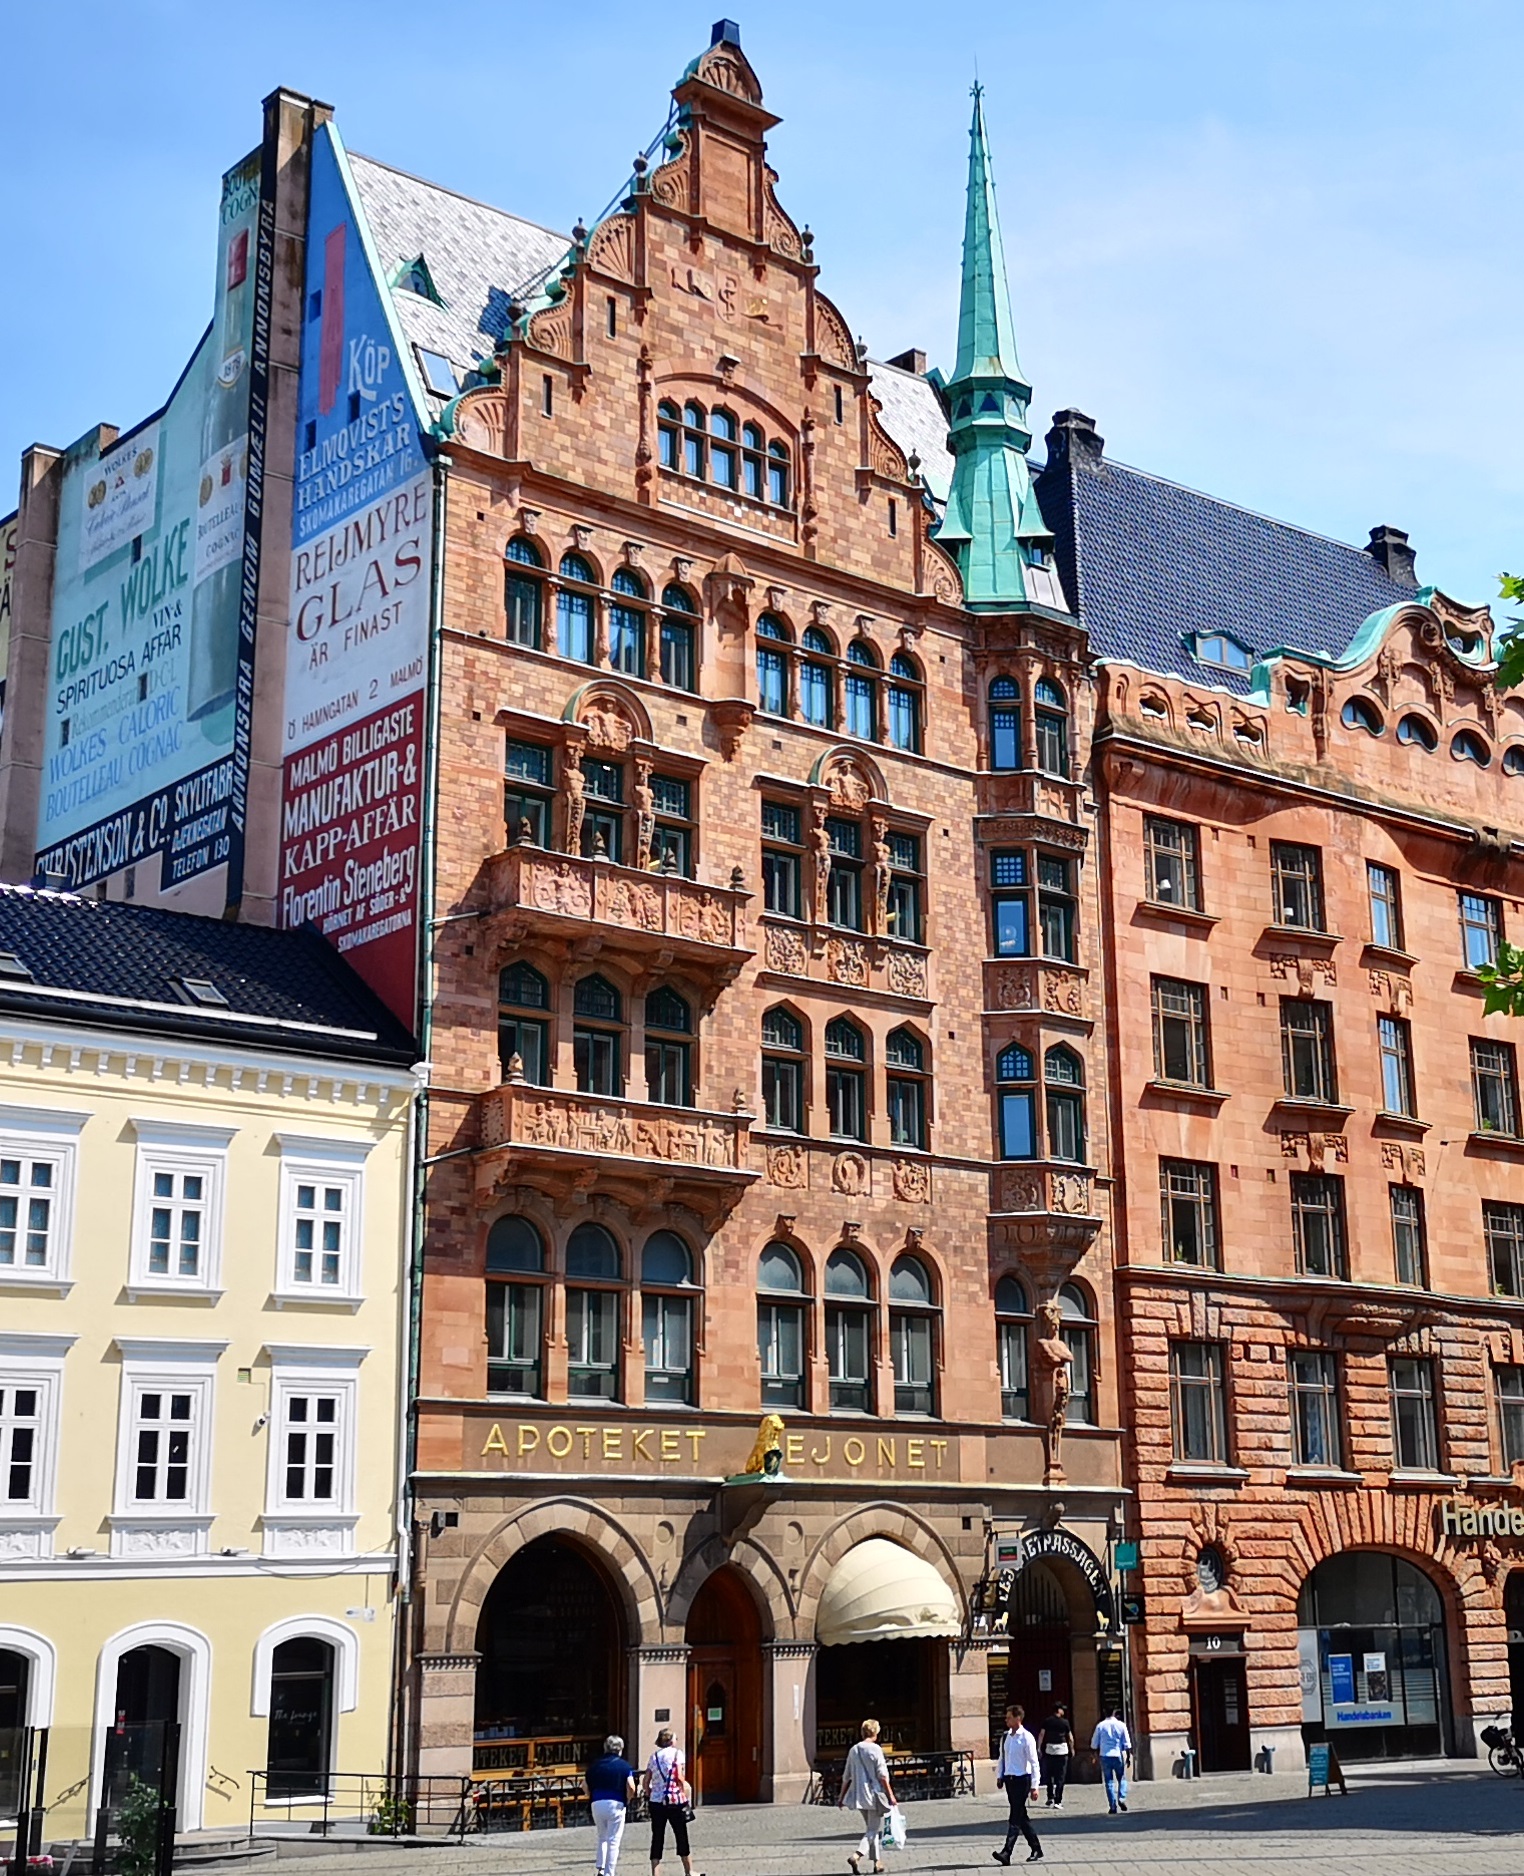 Är Apoteket Lejonet i Malmö Sveriges vackraste byggnad genom tiderna?